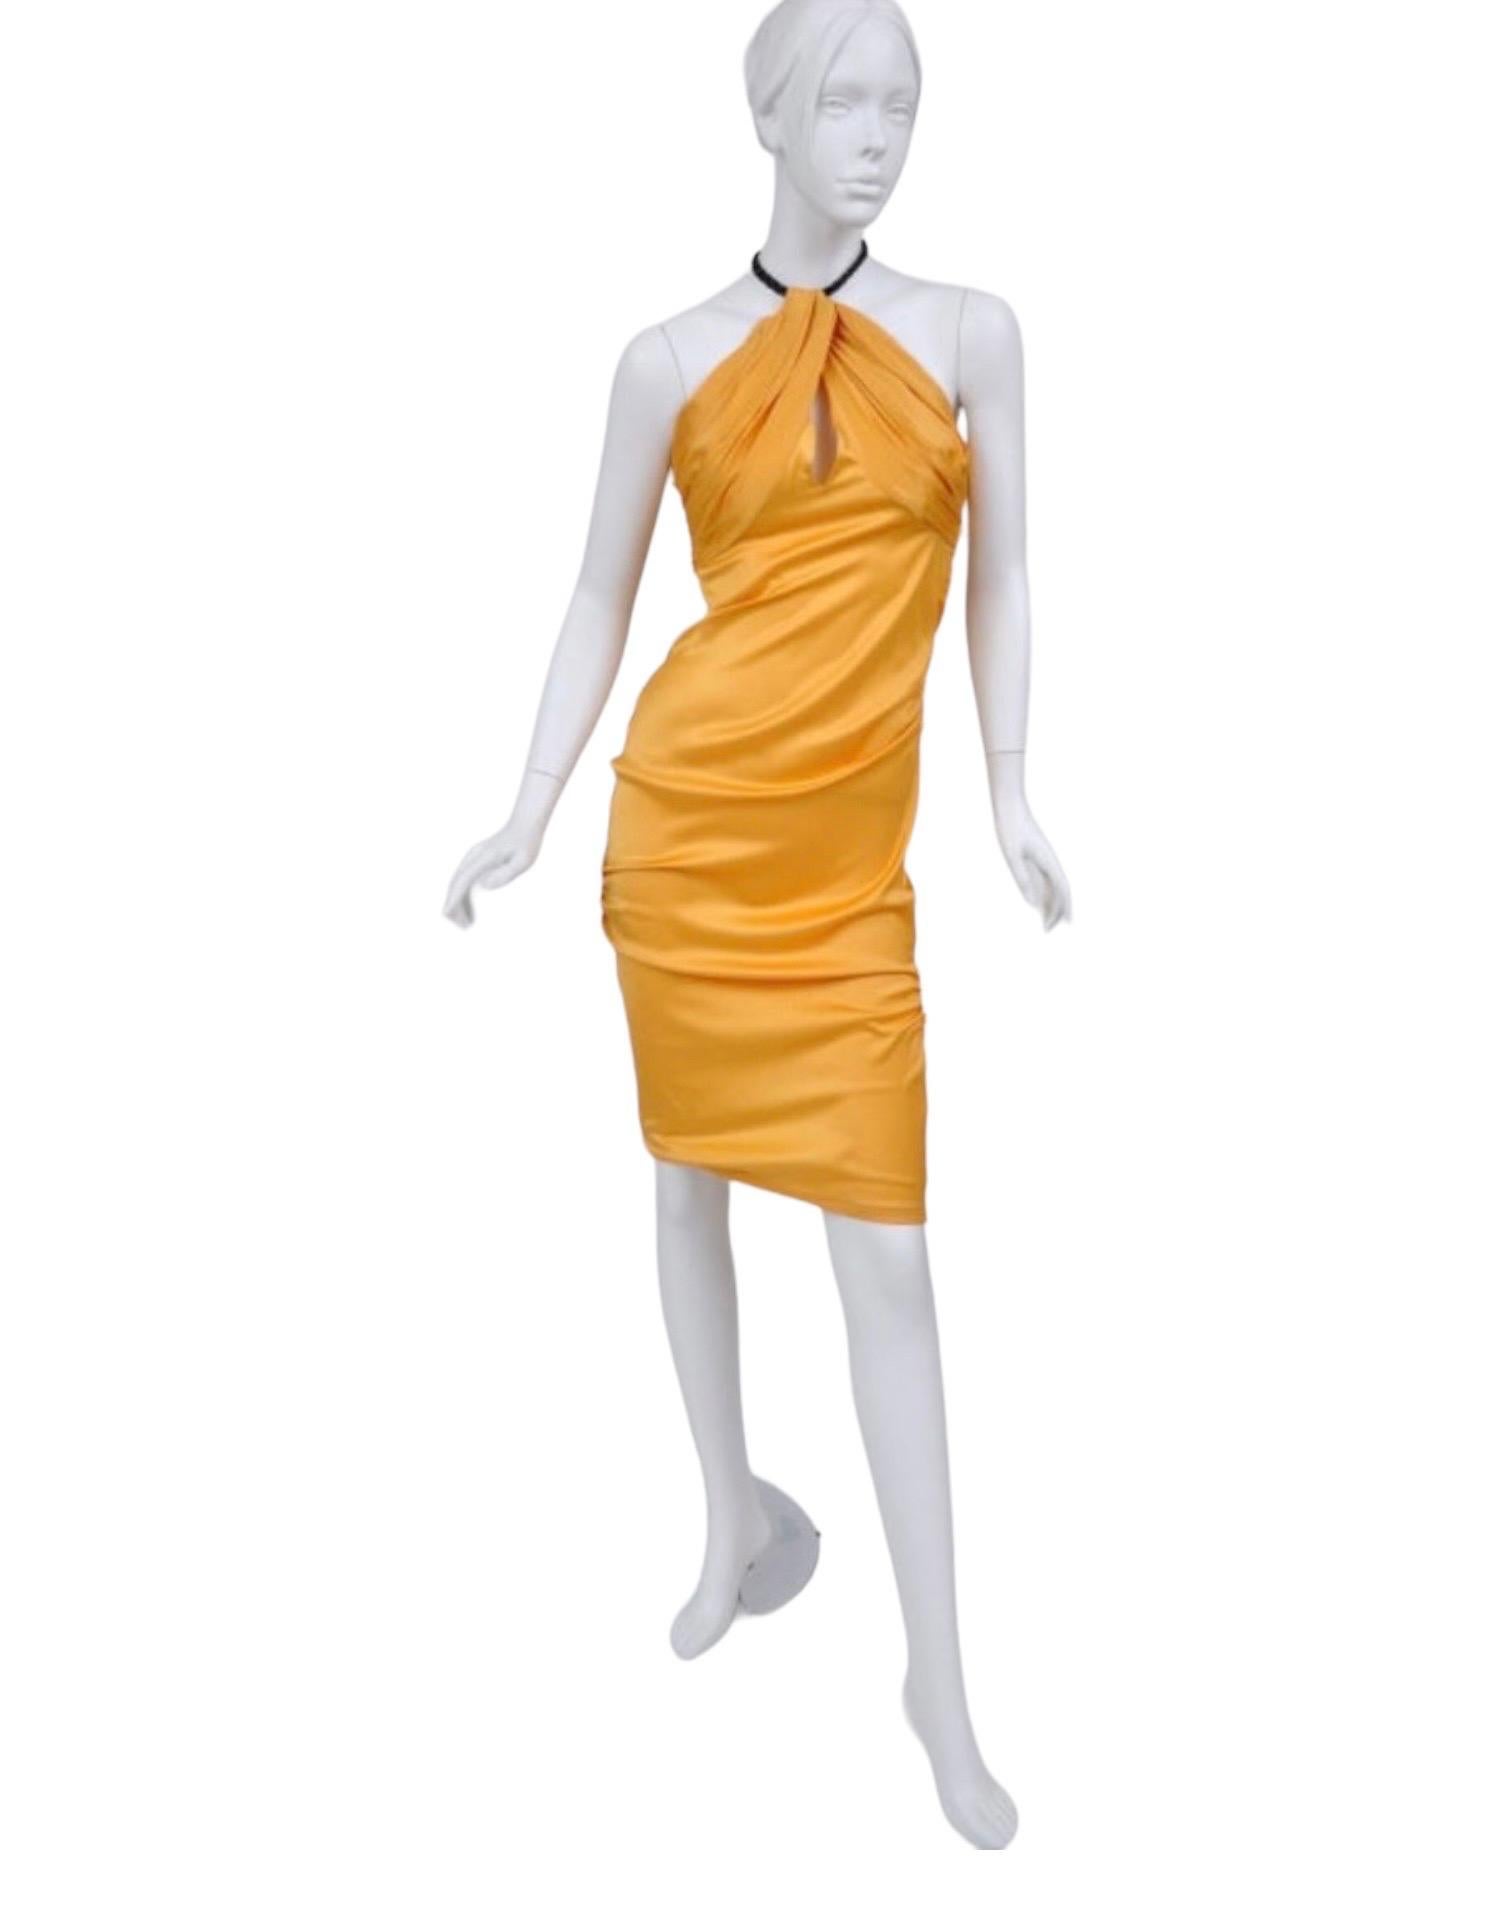 TOM FORD für GUCCI KLEID
2004 Cruise Collection
Größenetikett fehlt, ca. Größe 40
Tom hat ein sinnlich geschnittenes Kleid mit einem Hauch von Couture-Chic kreiert. Weiche Rüschen verleihen einer klassischen Form einen Hauch von femininer Struktur.